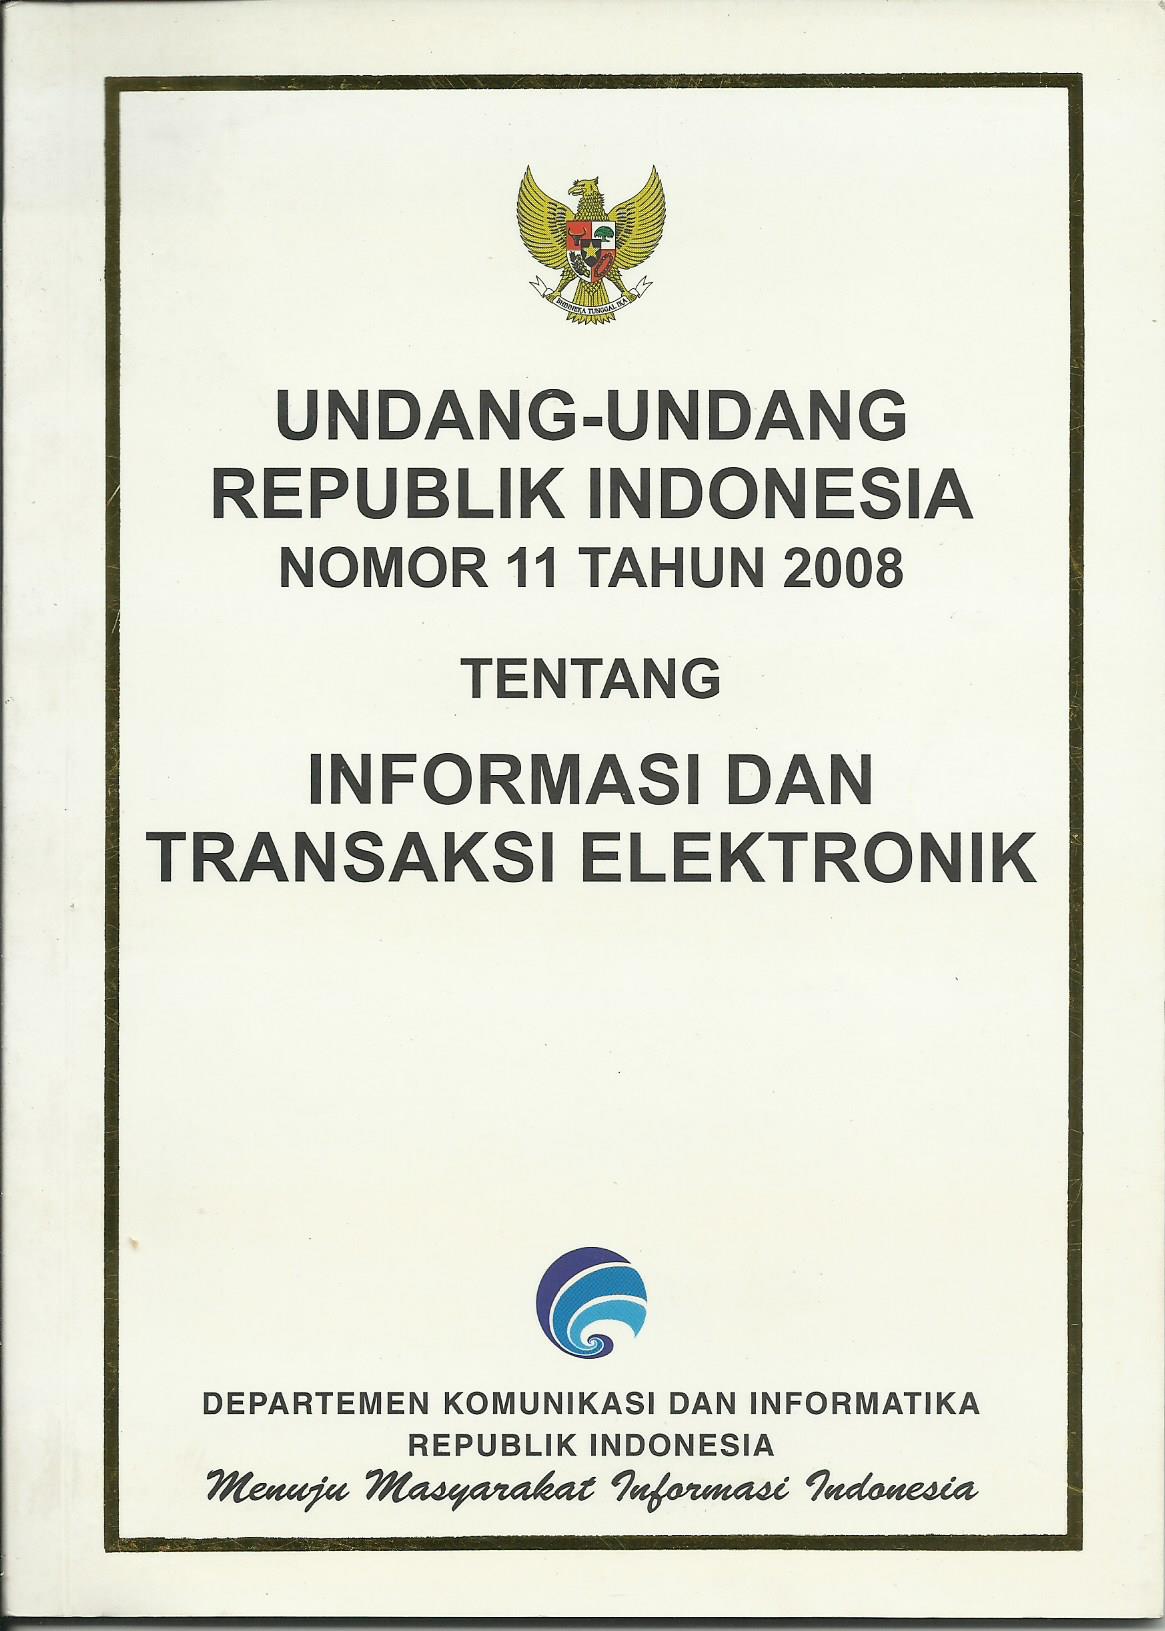 Undang-Undang Republik Indonesia Nomor 11 Tahun 2008 Tentang INFORMASI DAN TRANSAKSI ELEKTRONIK